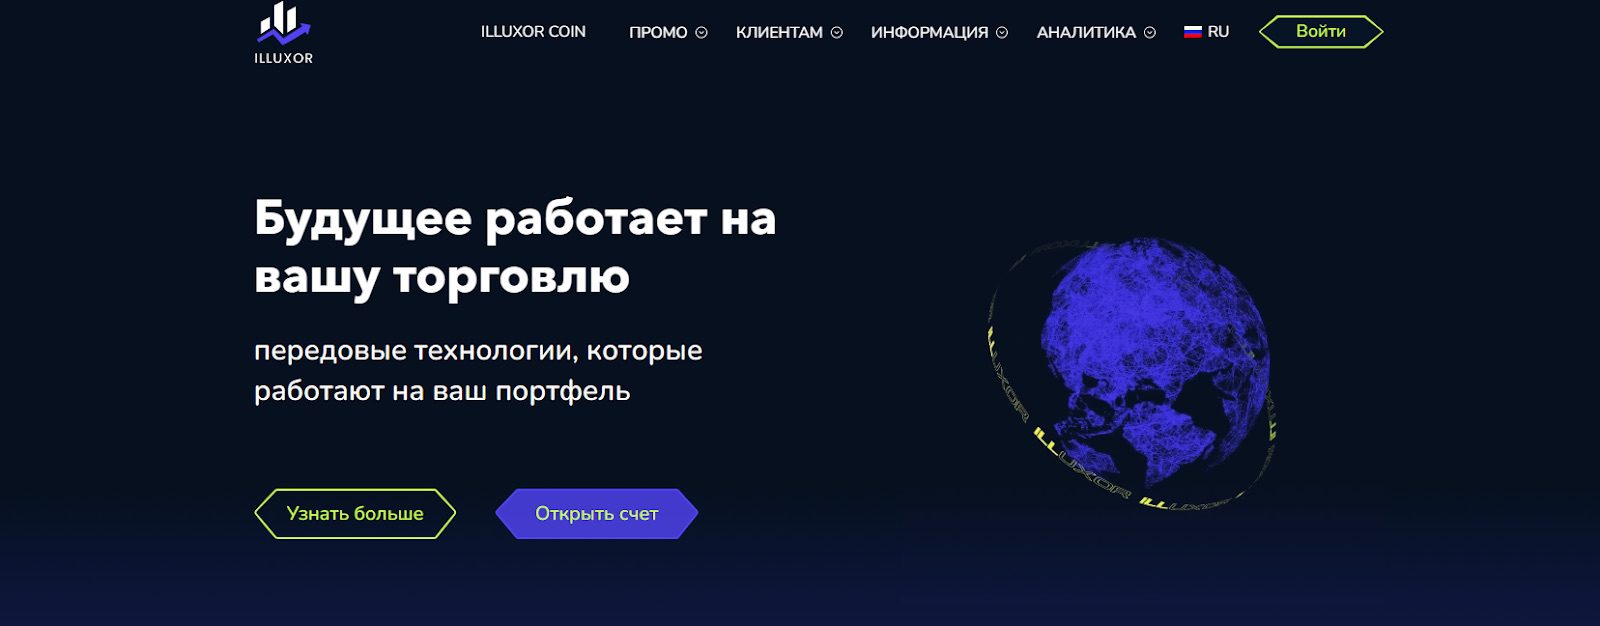 Сайт Illuxor.net